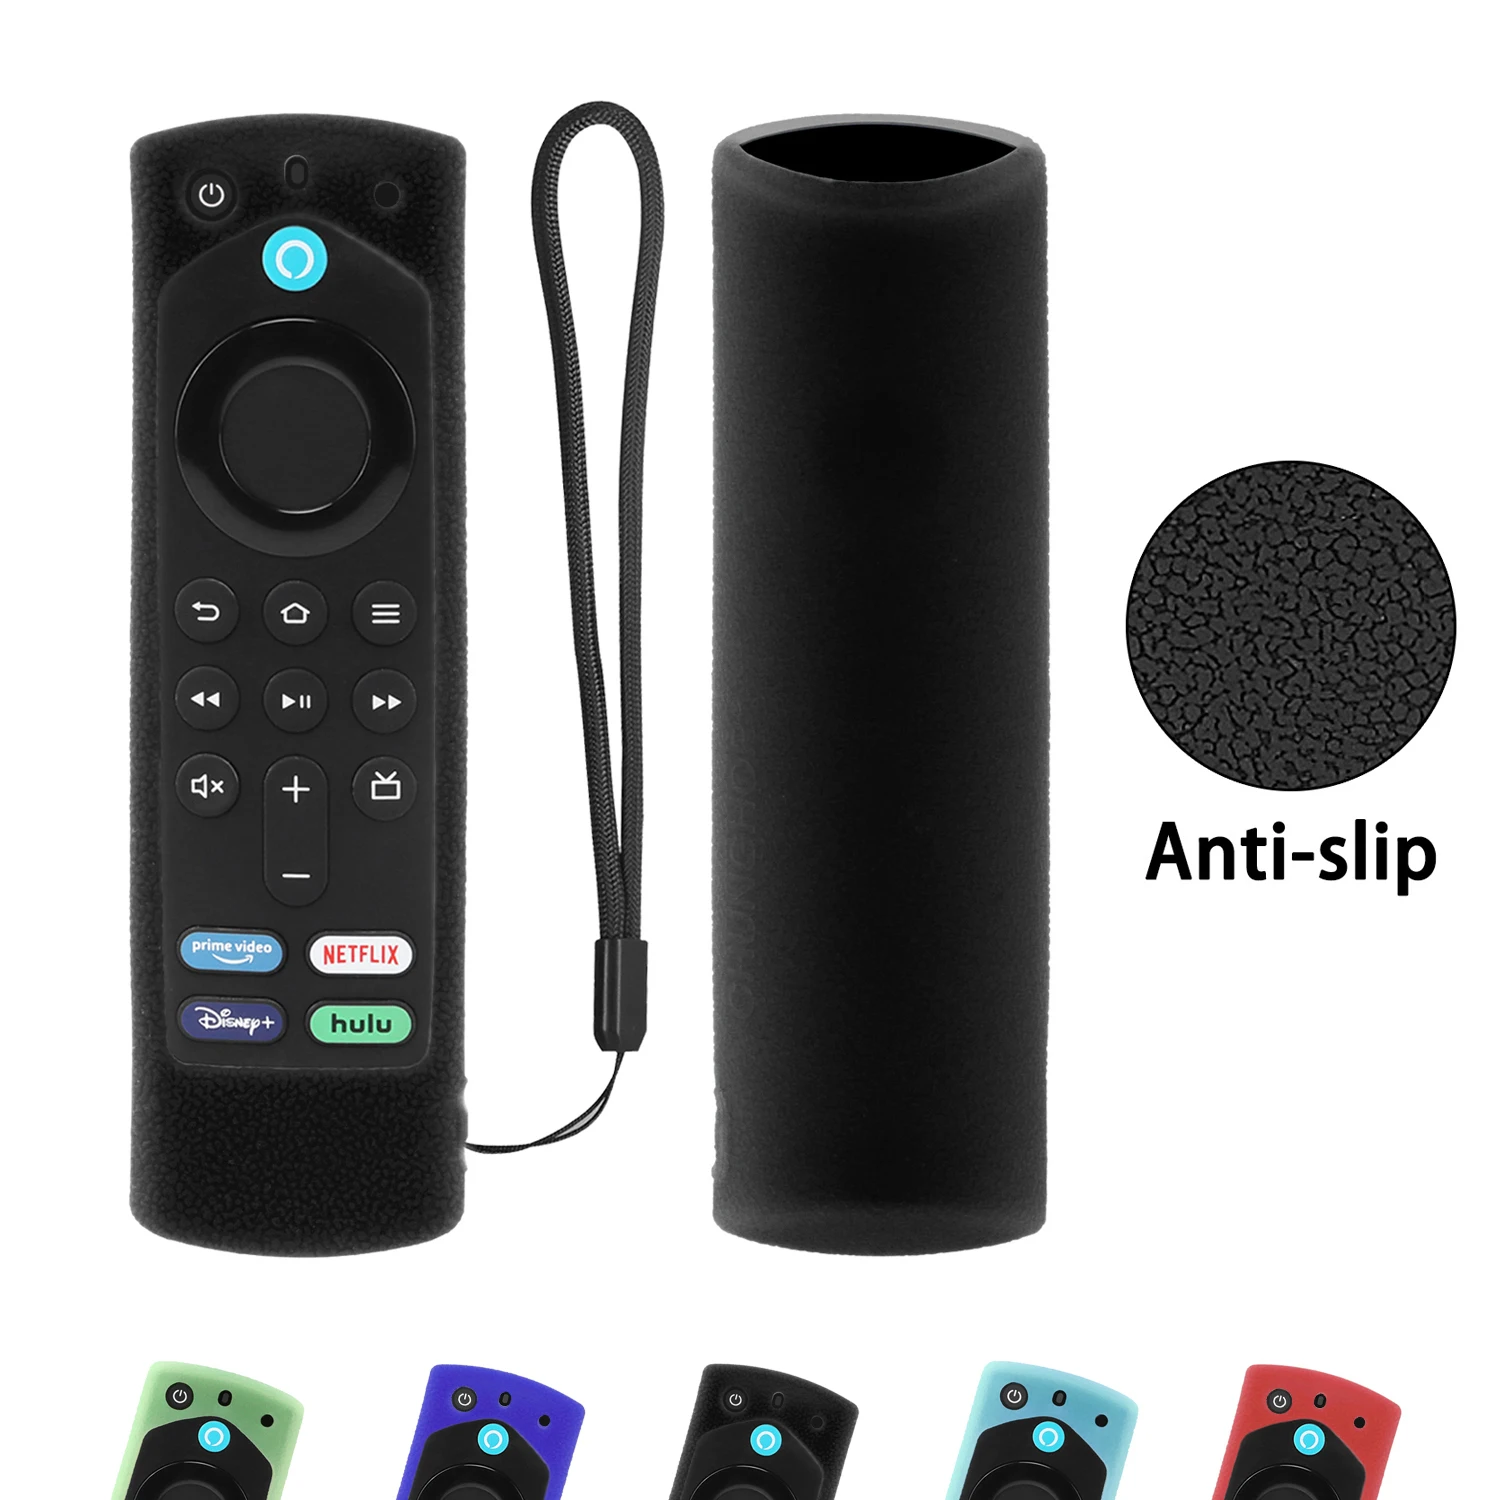 

Противоскользящий противоударный чехол для пульта дистанционного управления Alexa Voice 3-го поколения для Amazon Fire TV Stick